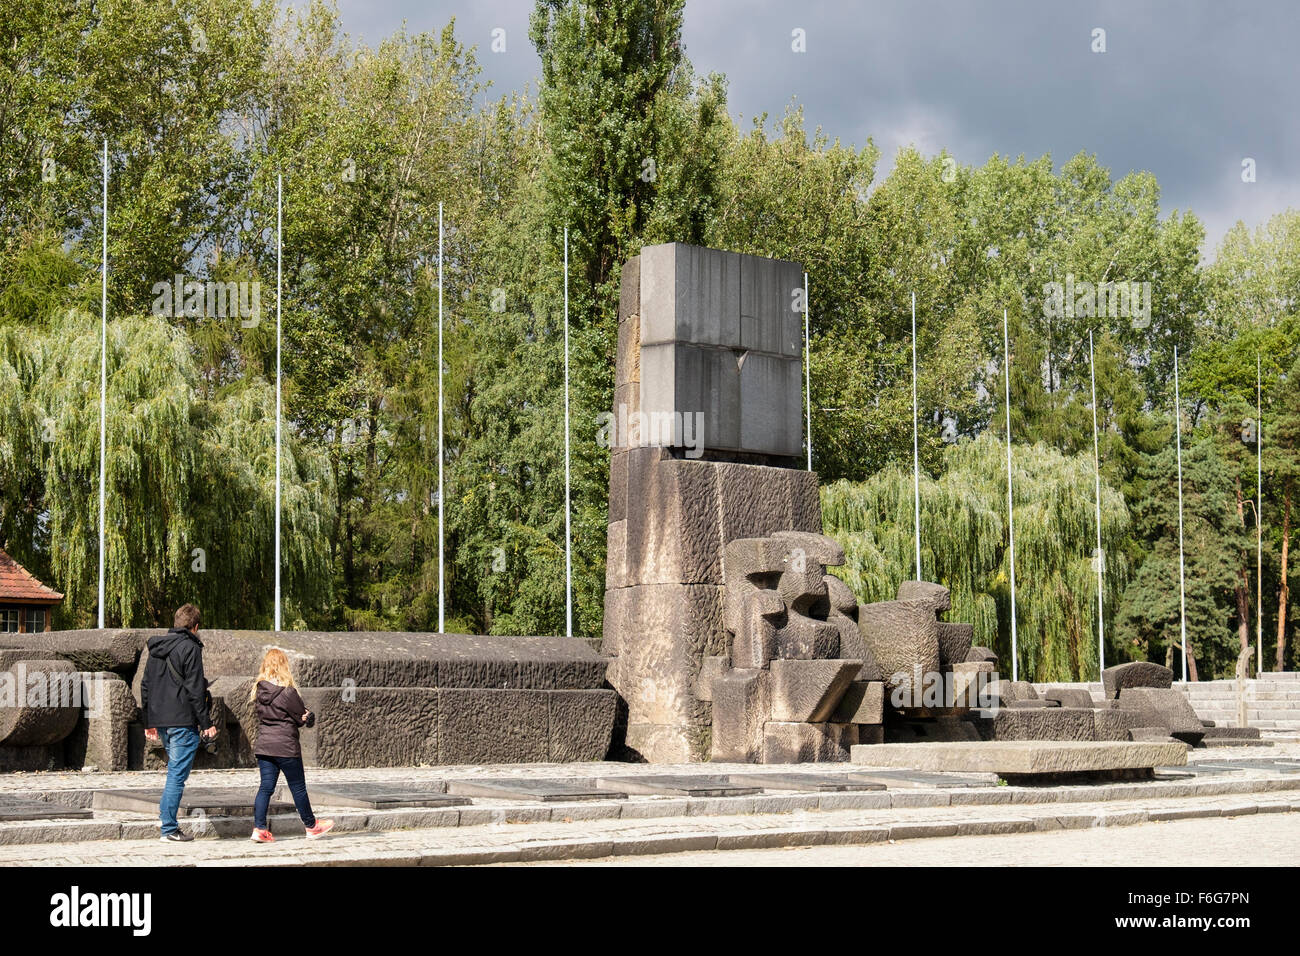 Memoriale a 1,5 milioni assassinati dai nazisti al campo Di Concentramento e Sterminio tedesco di Auschwitz II-Birkenau a Oswiecim, Polonia Foto Stock